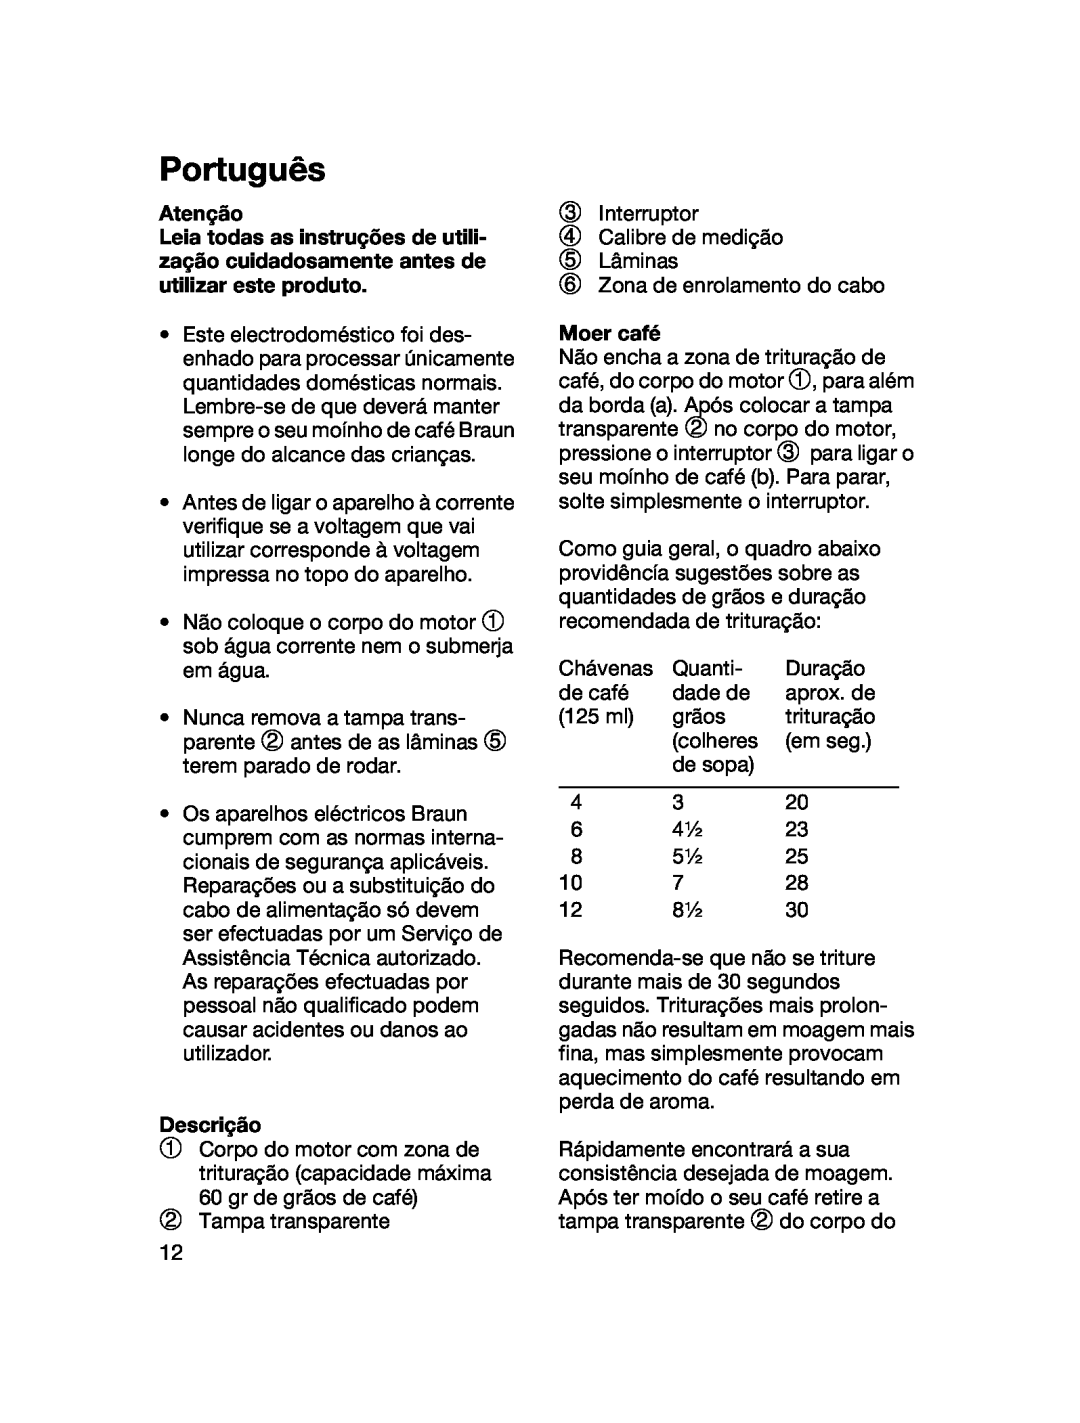 Braun 4041 manual Português, Atenção, Descrição, Moer café 